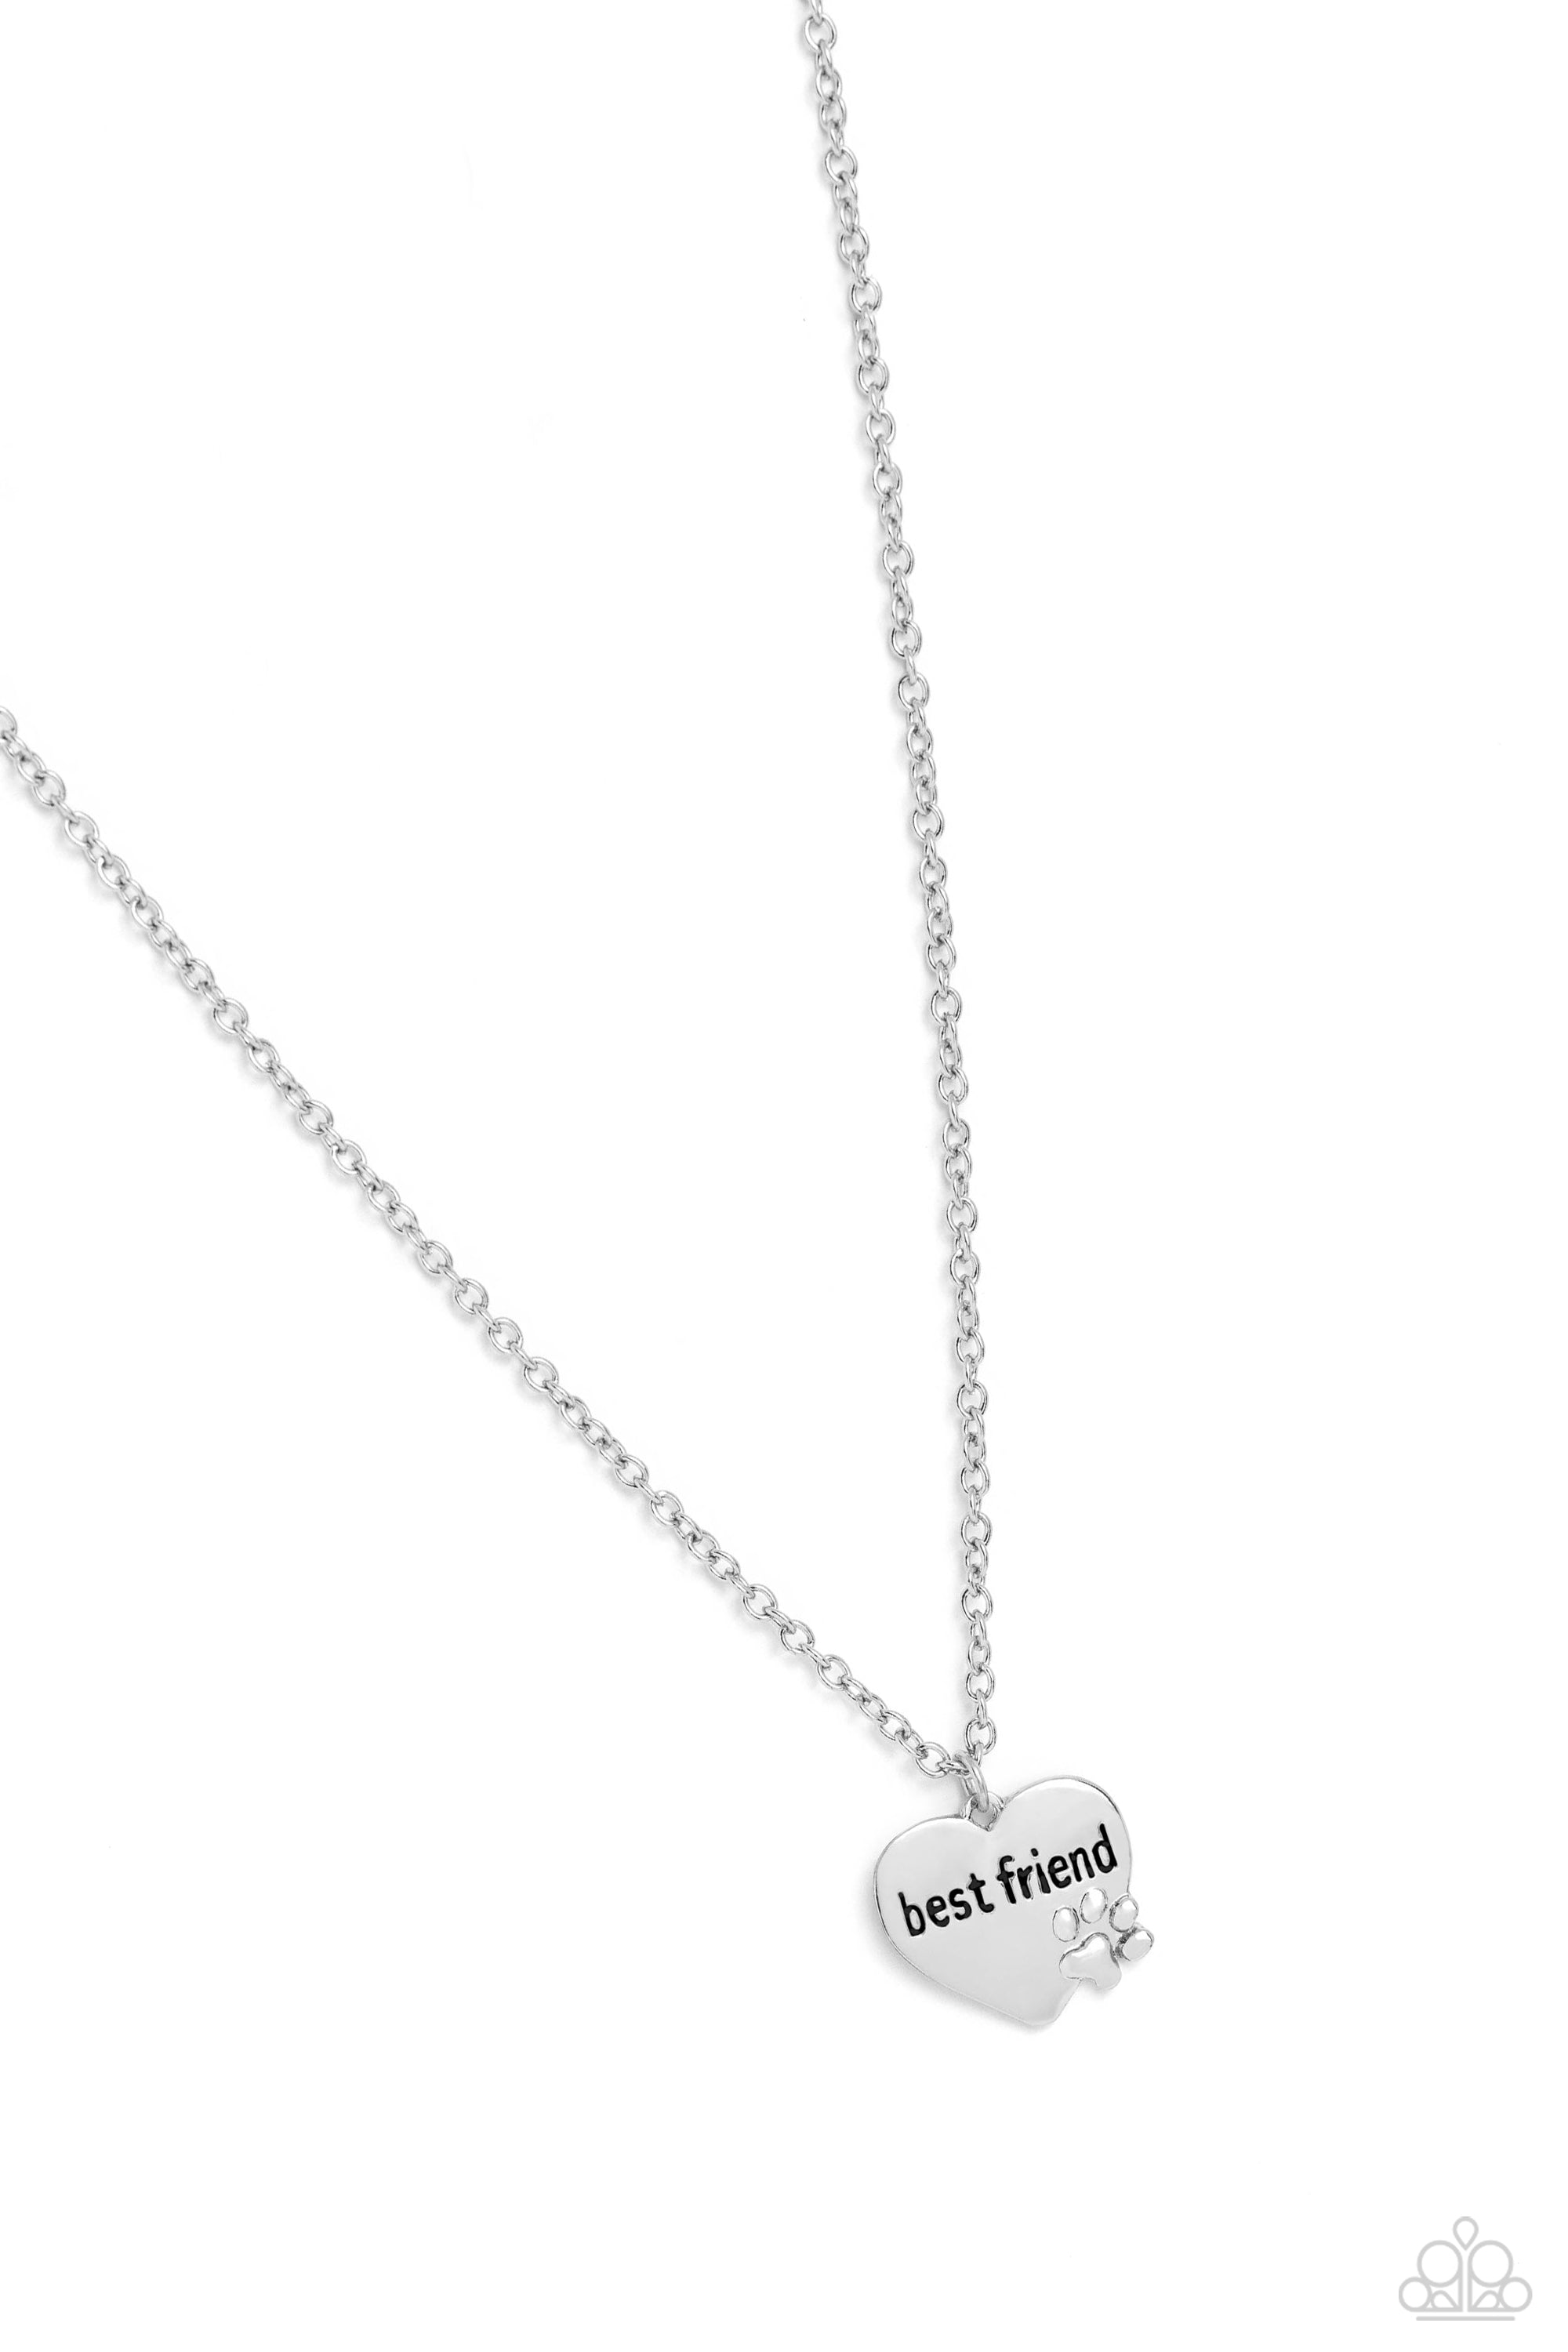 Mans Best Friend Silver Necklace - Jewelry by Bretta